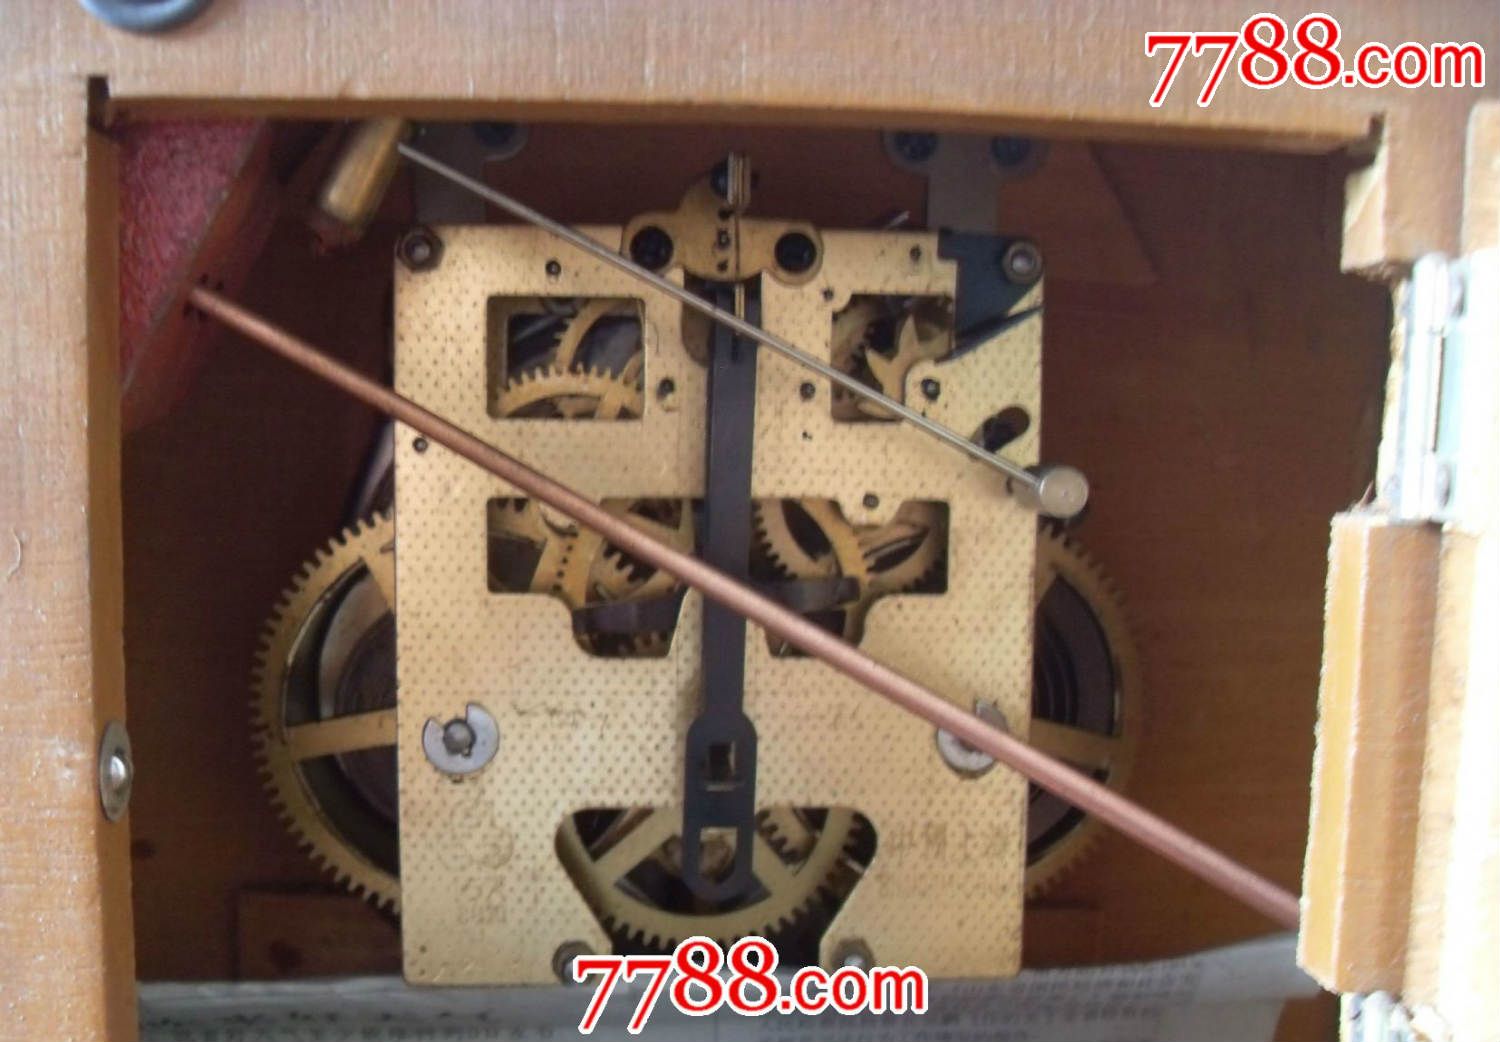 文革中国上海制造三五座钟挂钟机械表15天双发条纯铜机芯